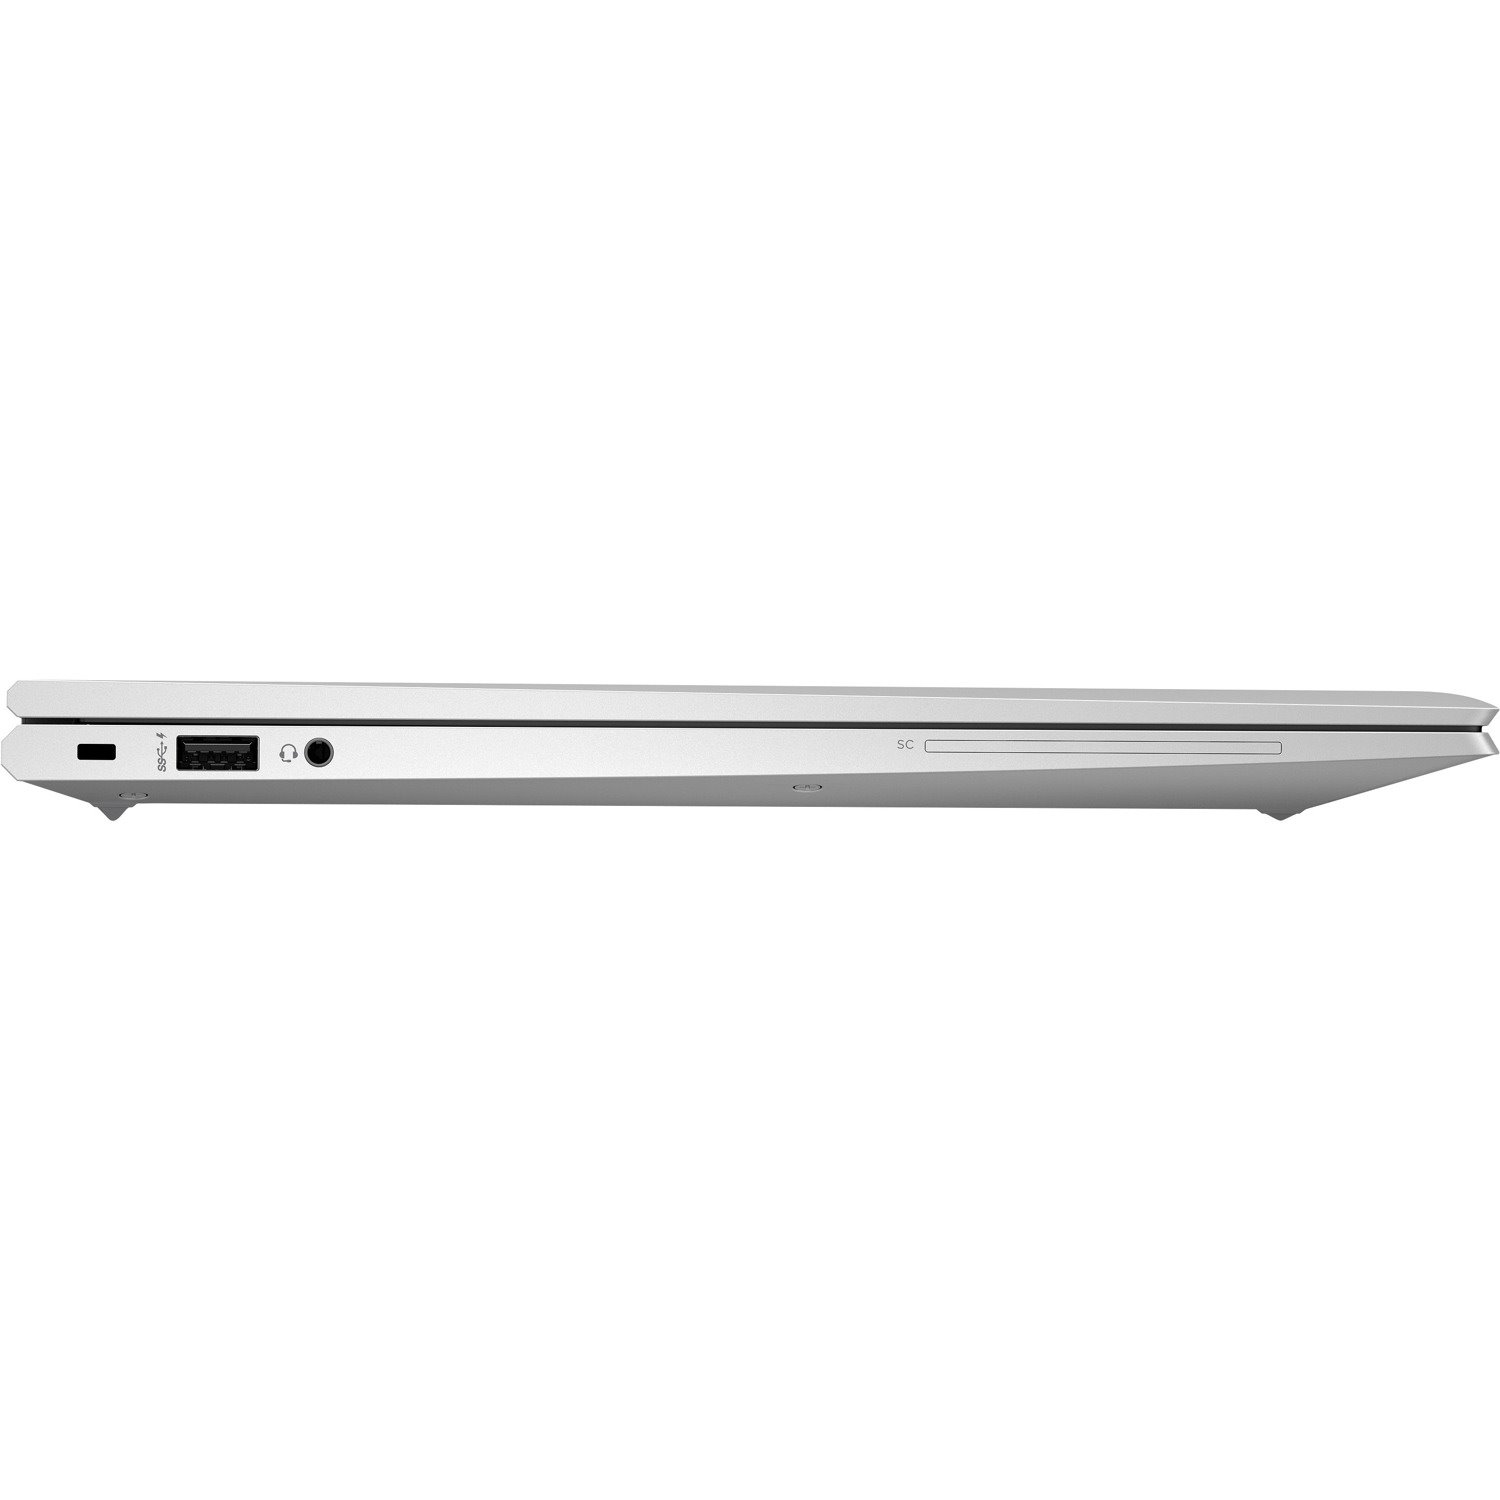 HP EliteBook 850 G7 LTE Advanced 15.6" Notebook - Intel Core i7 10th Gen i7-10510U Quad-core (4 Core) 1.80 GHz - 8 GB Total RAM - 256 GB SSD